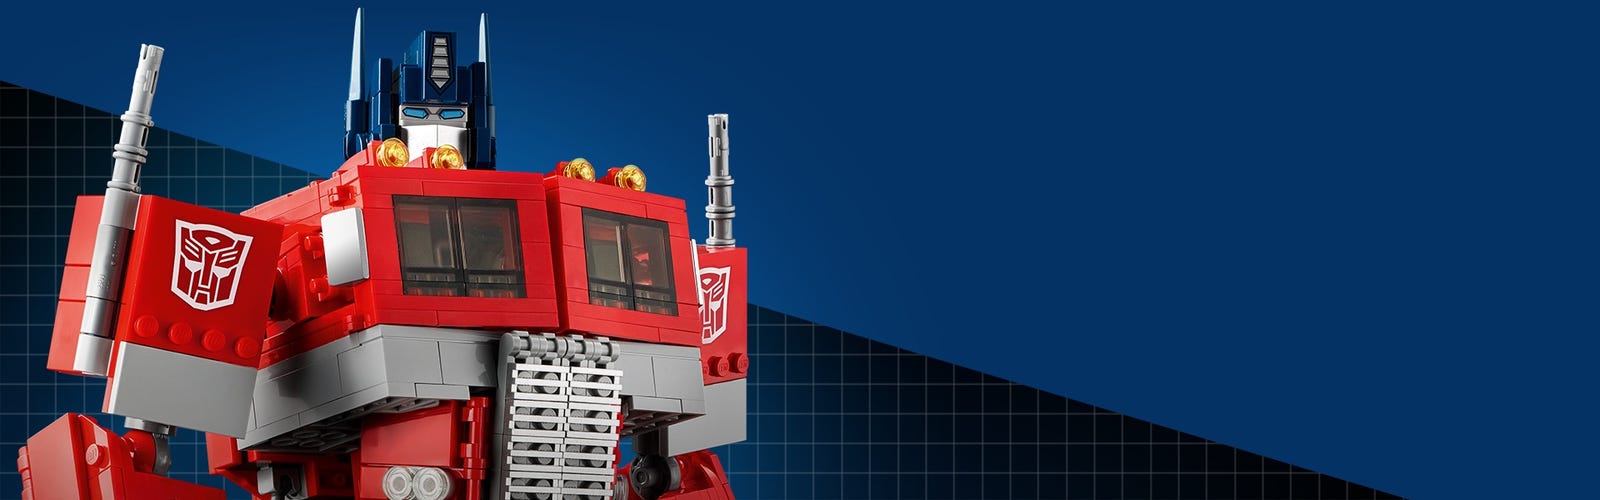 Lego Transformers -  Finland